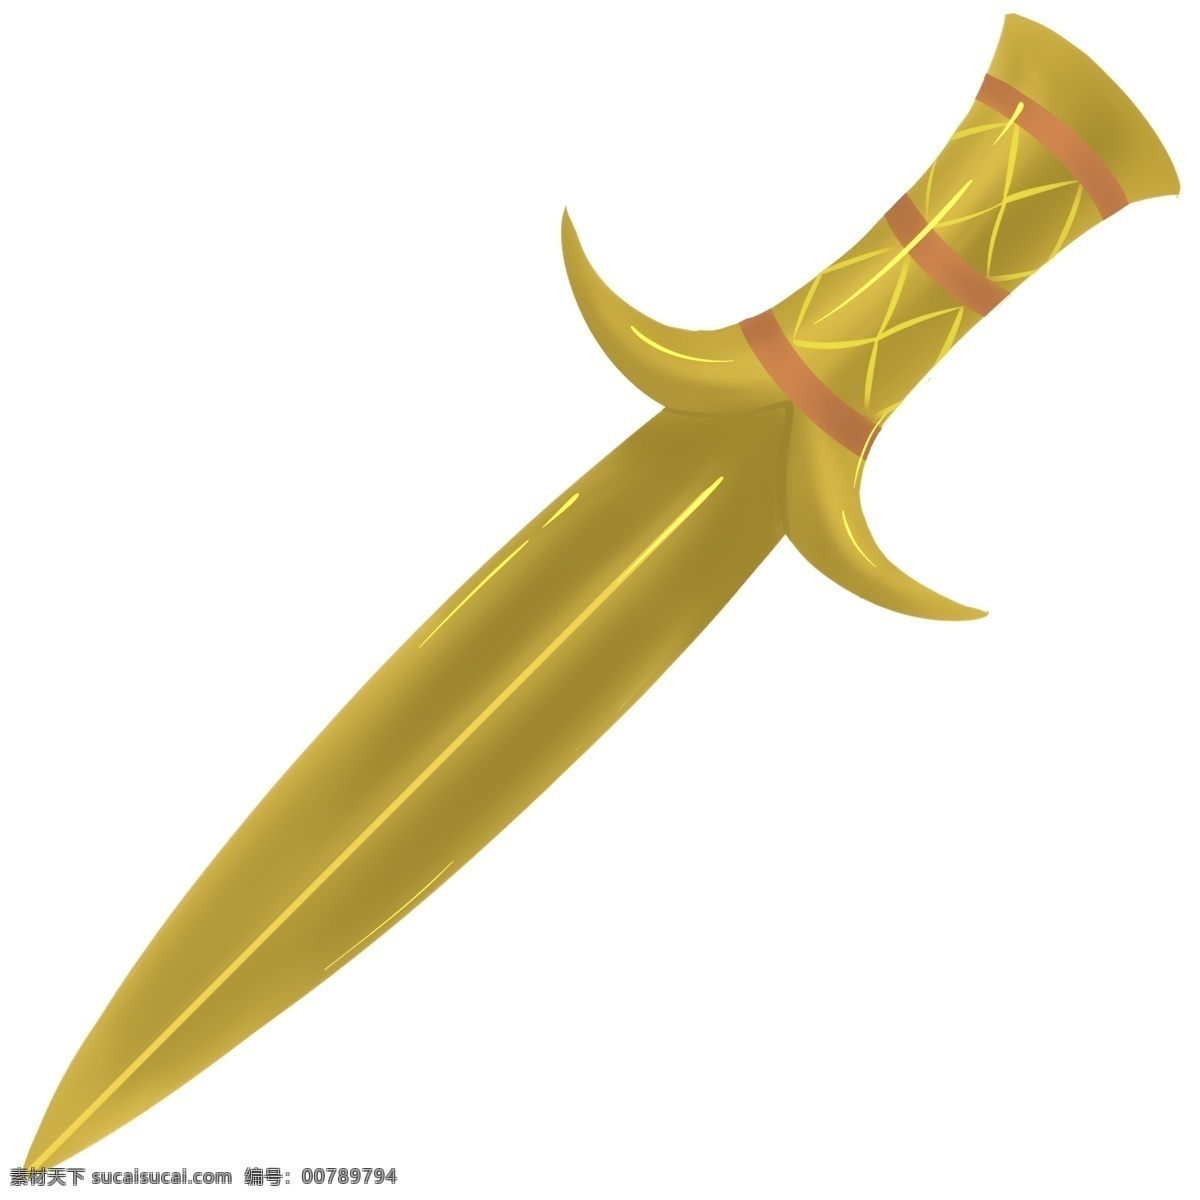 黄色 长剑 装饰 插画 黄色的长剑 漂亮的长剑 锋利的长剑 长剑装饰 长剑插画 精美长剑 卡通长剑